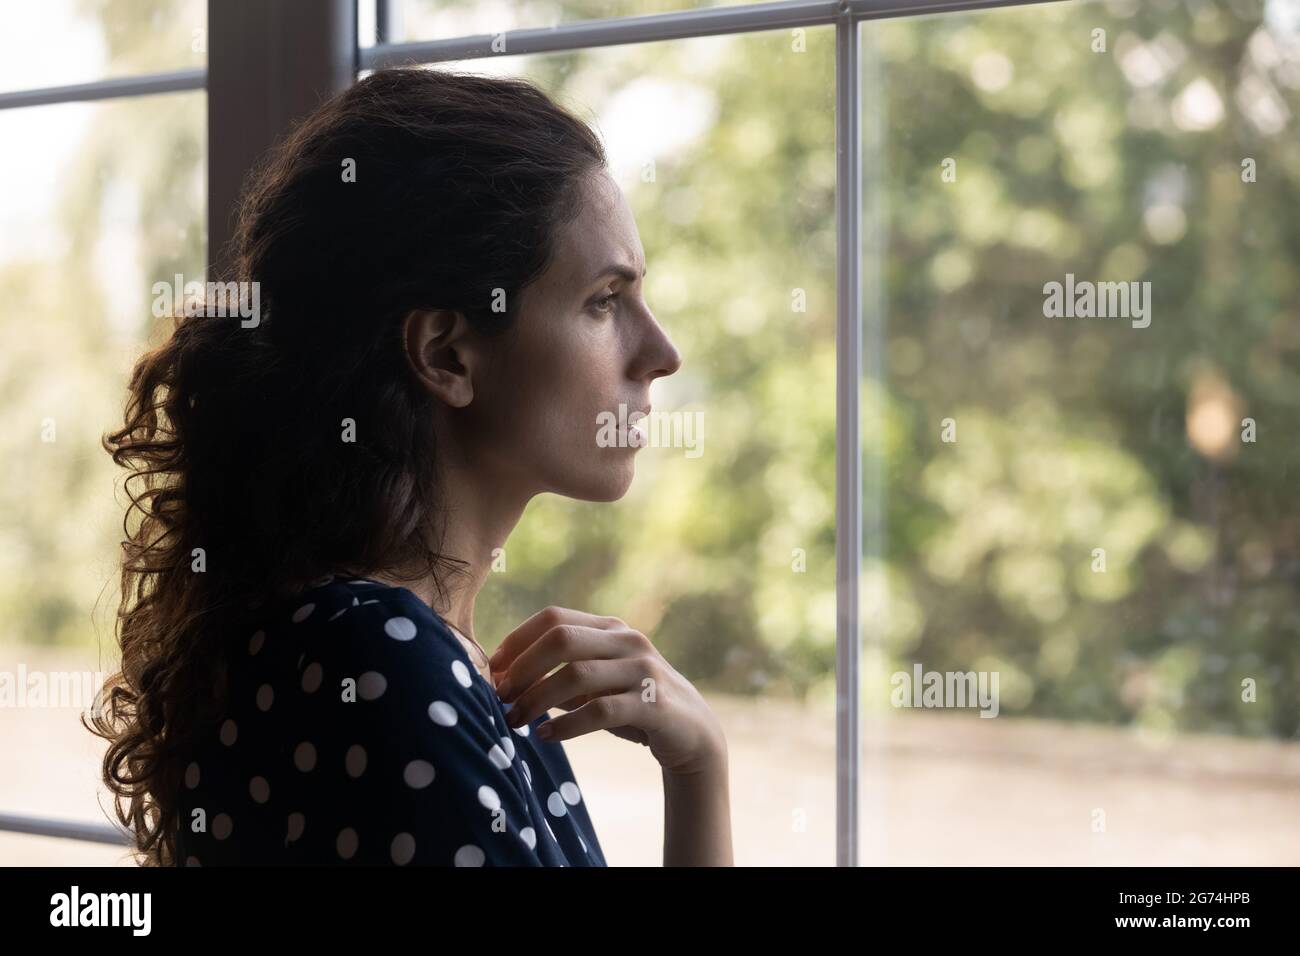 Frustrierte, depressive Millennials-Frau, die aus dem Fenster schaute Stockfoto